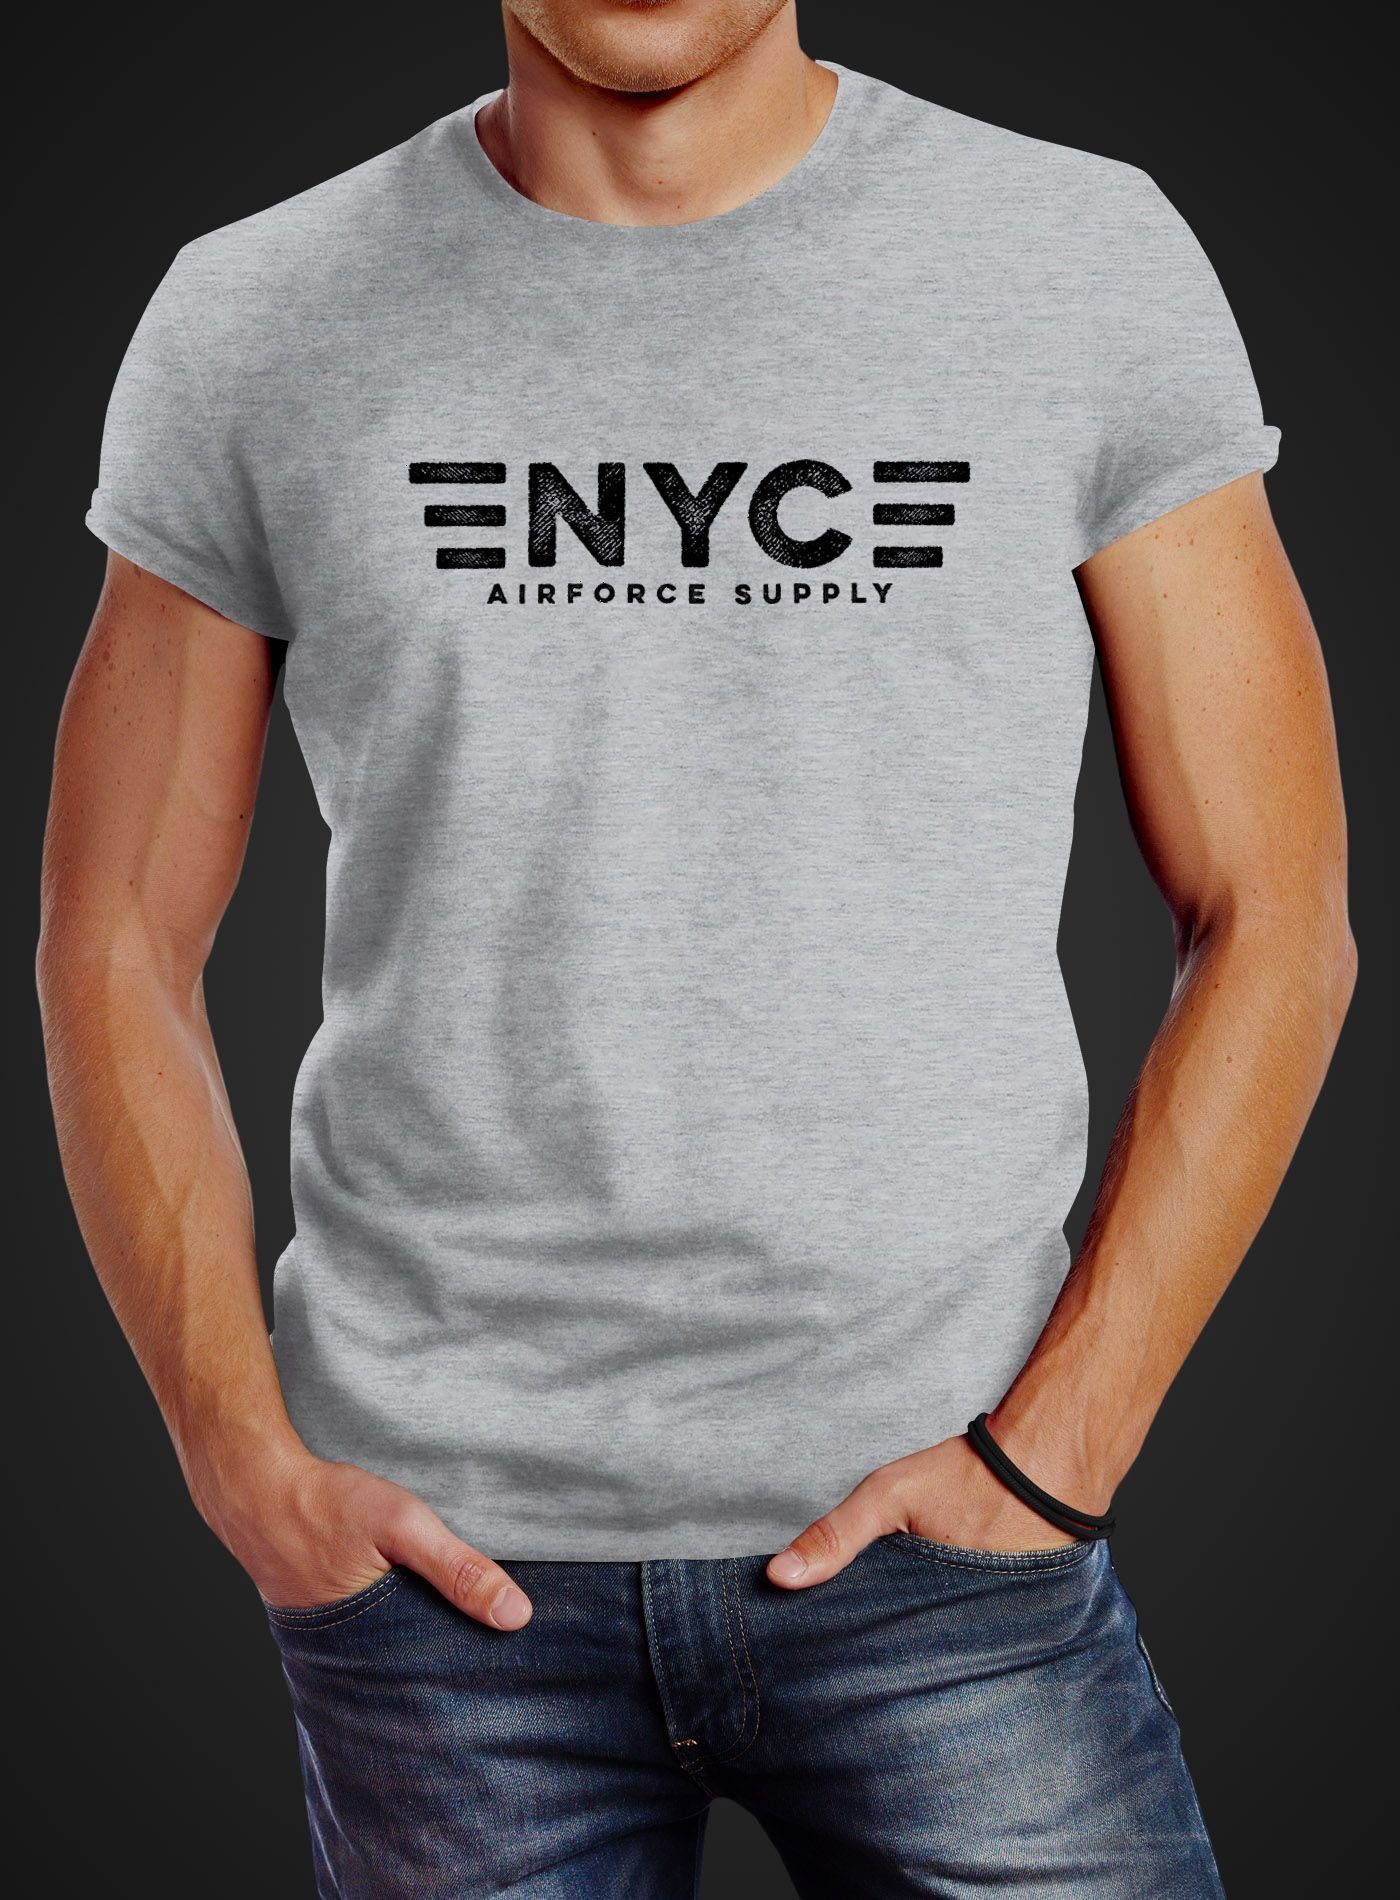 Aufdruck Print-Shirt Print NYC mit Neverless grau Supply T-Shirt Neverless® Airforce Print Army Herren New York City